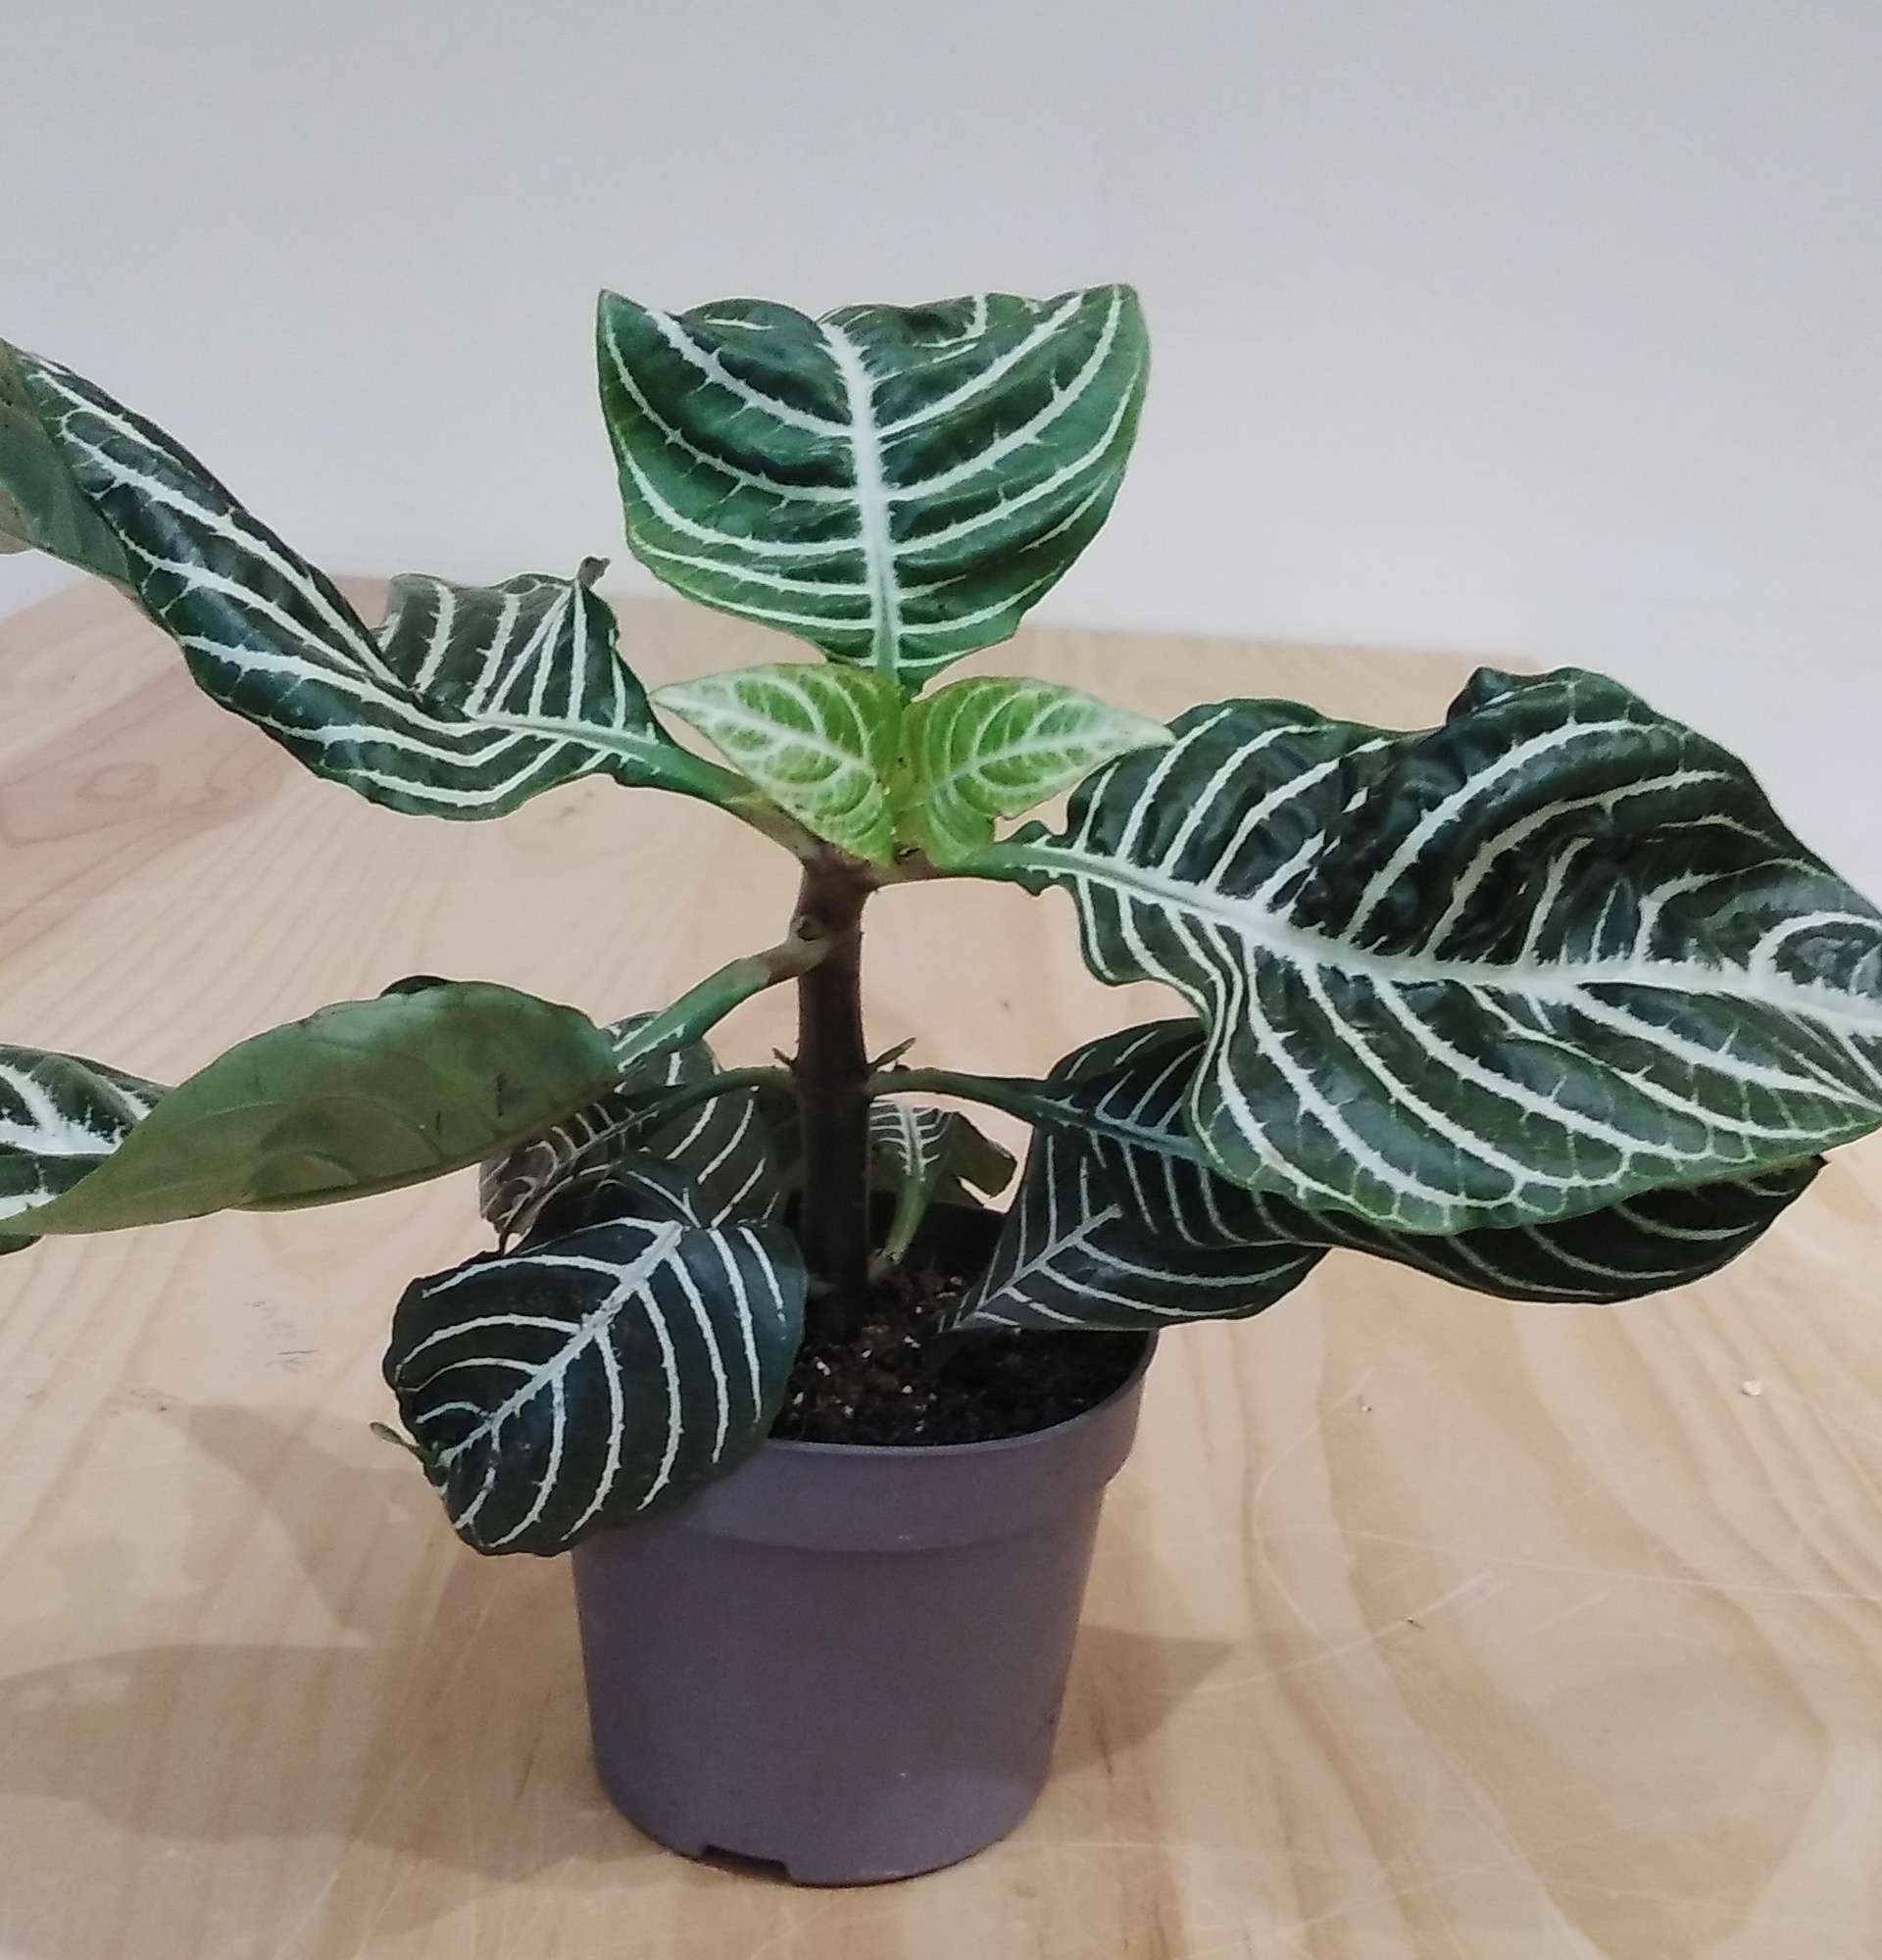  вазон афеляндра фото - лиственные растения